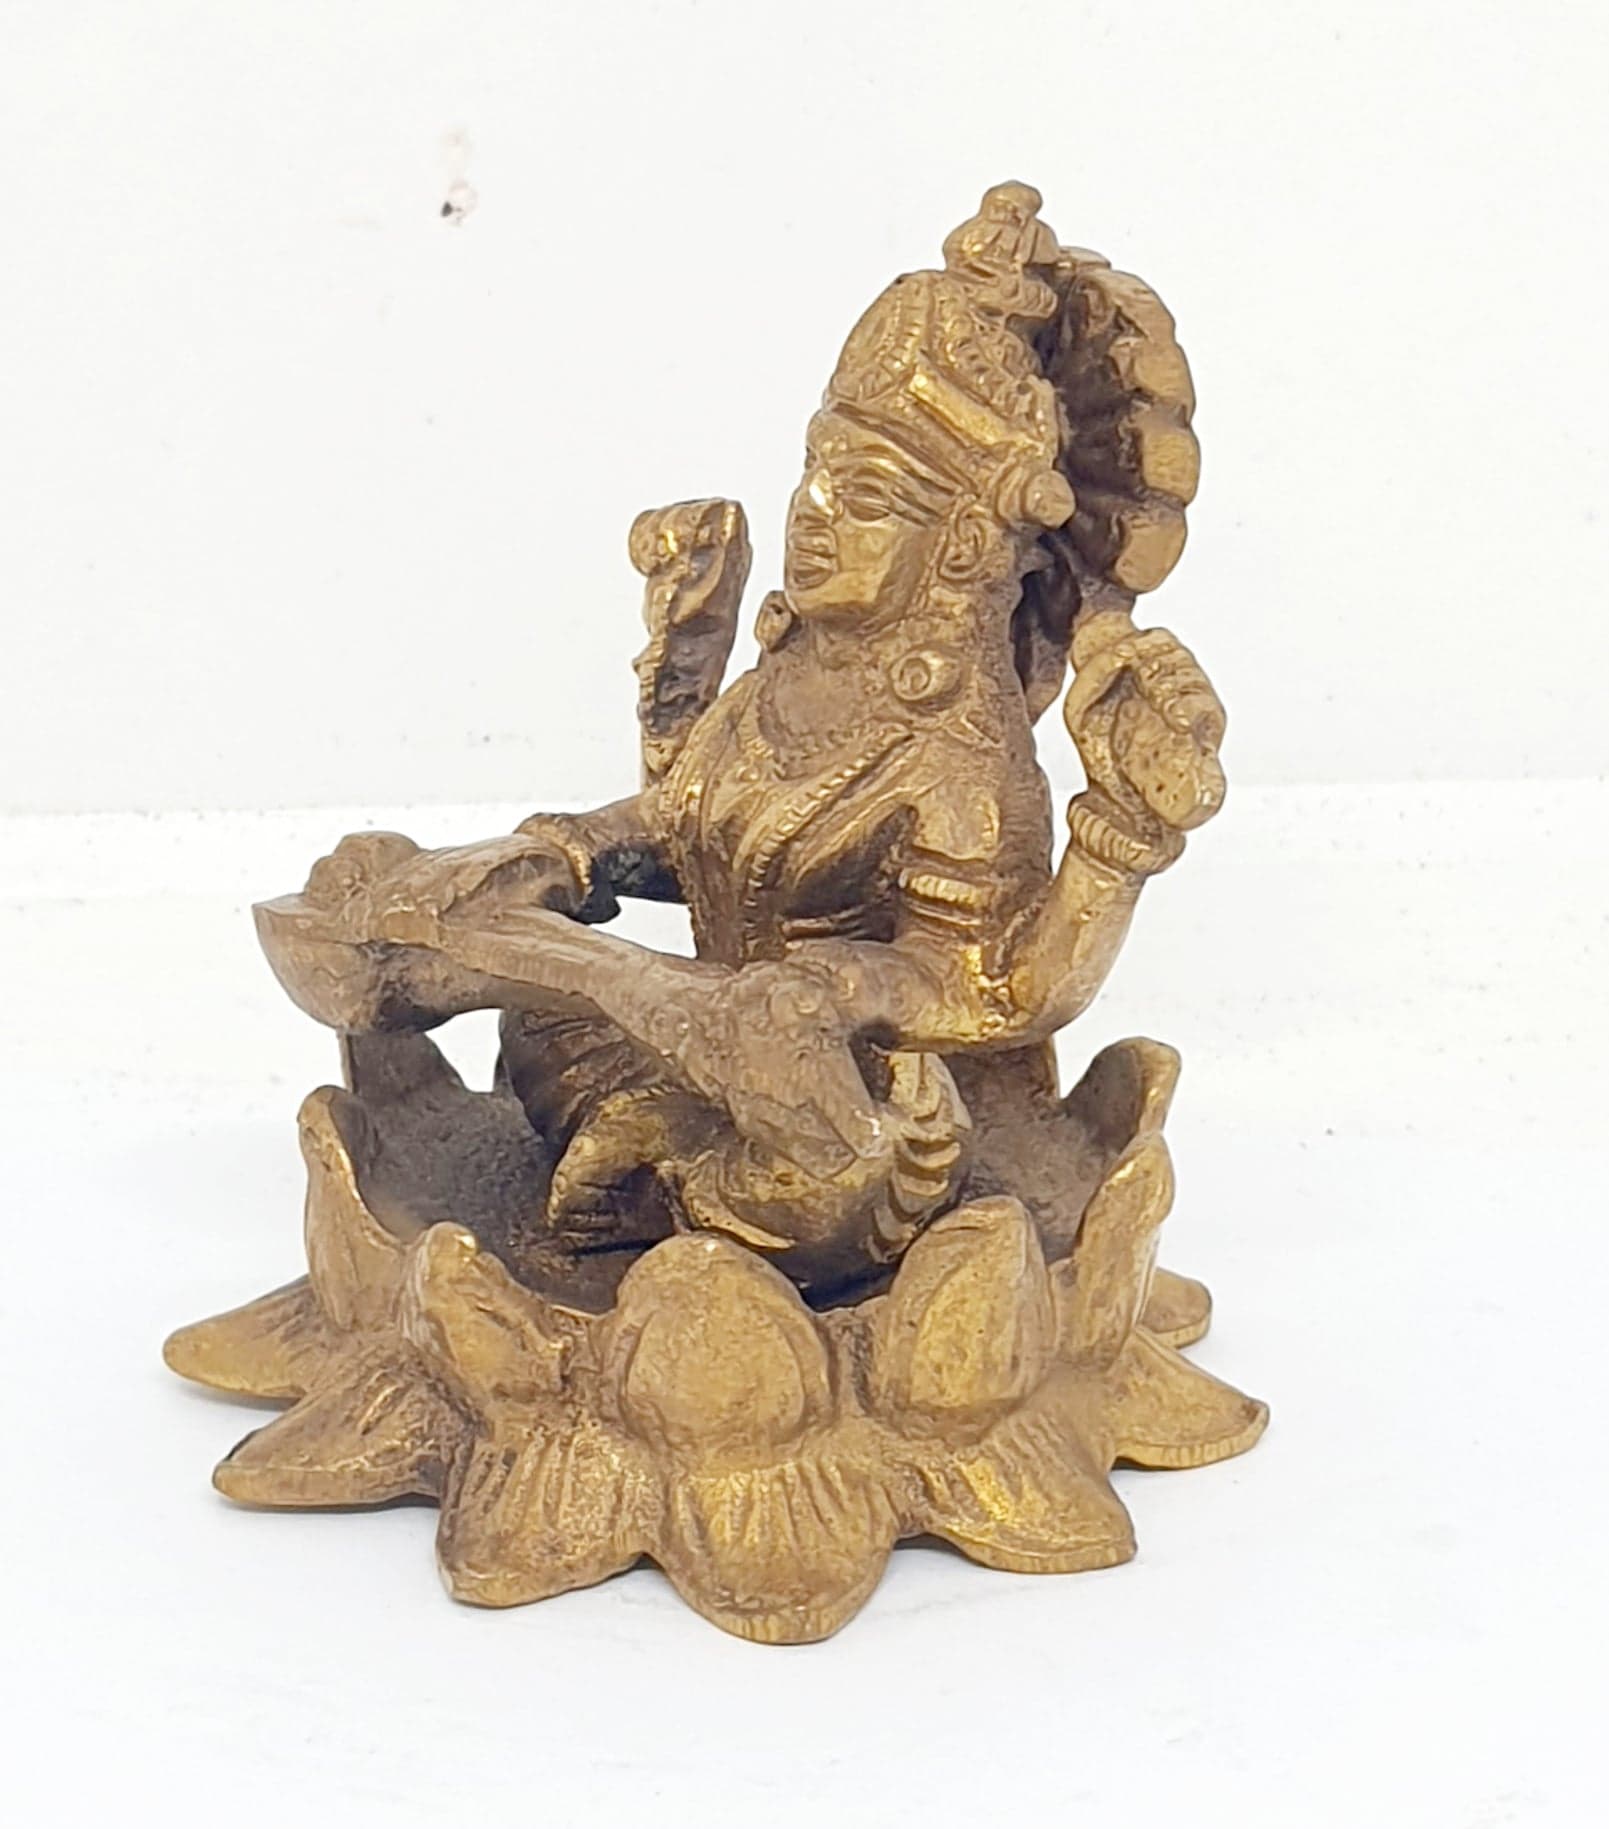 รูปภาพที่1 ของสินค้า : TP085 พระแม่สุรัสวดีนั่งดอกบัว เนื้อทองเหลืองอินเดีย 